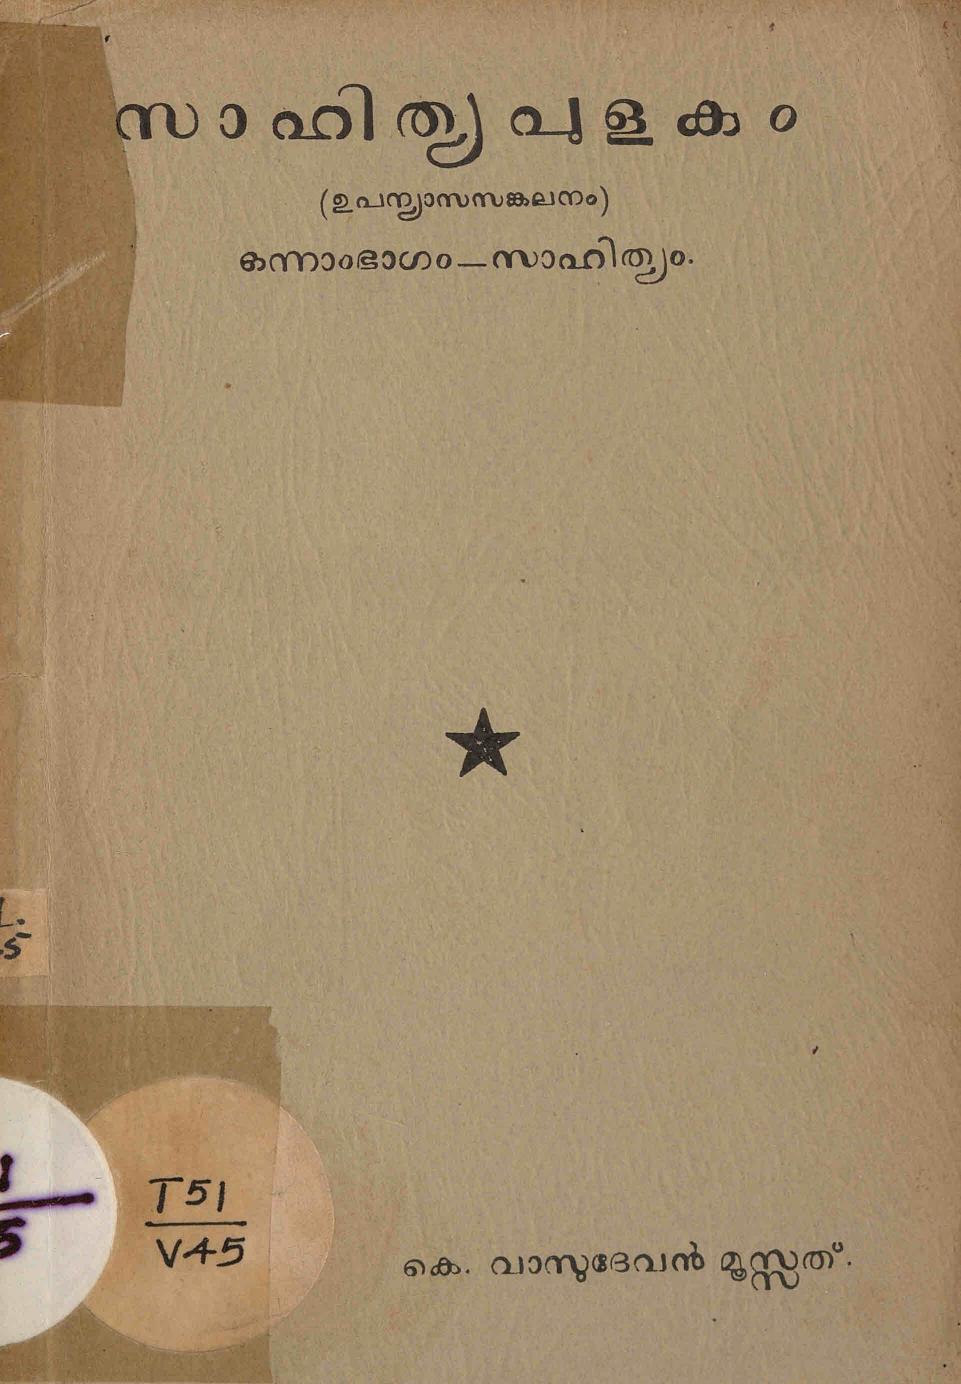  1950 - സാഹിത്യപുളകം - കെ. വാസുദേവൻ മൂസ്സത്